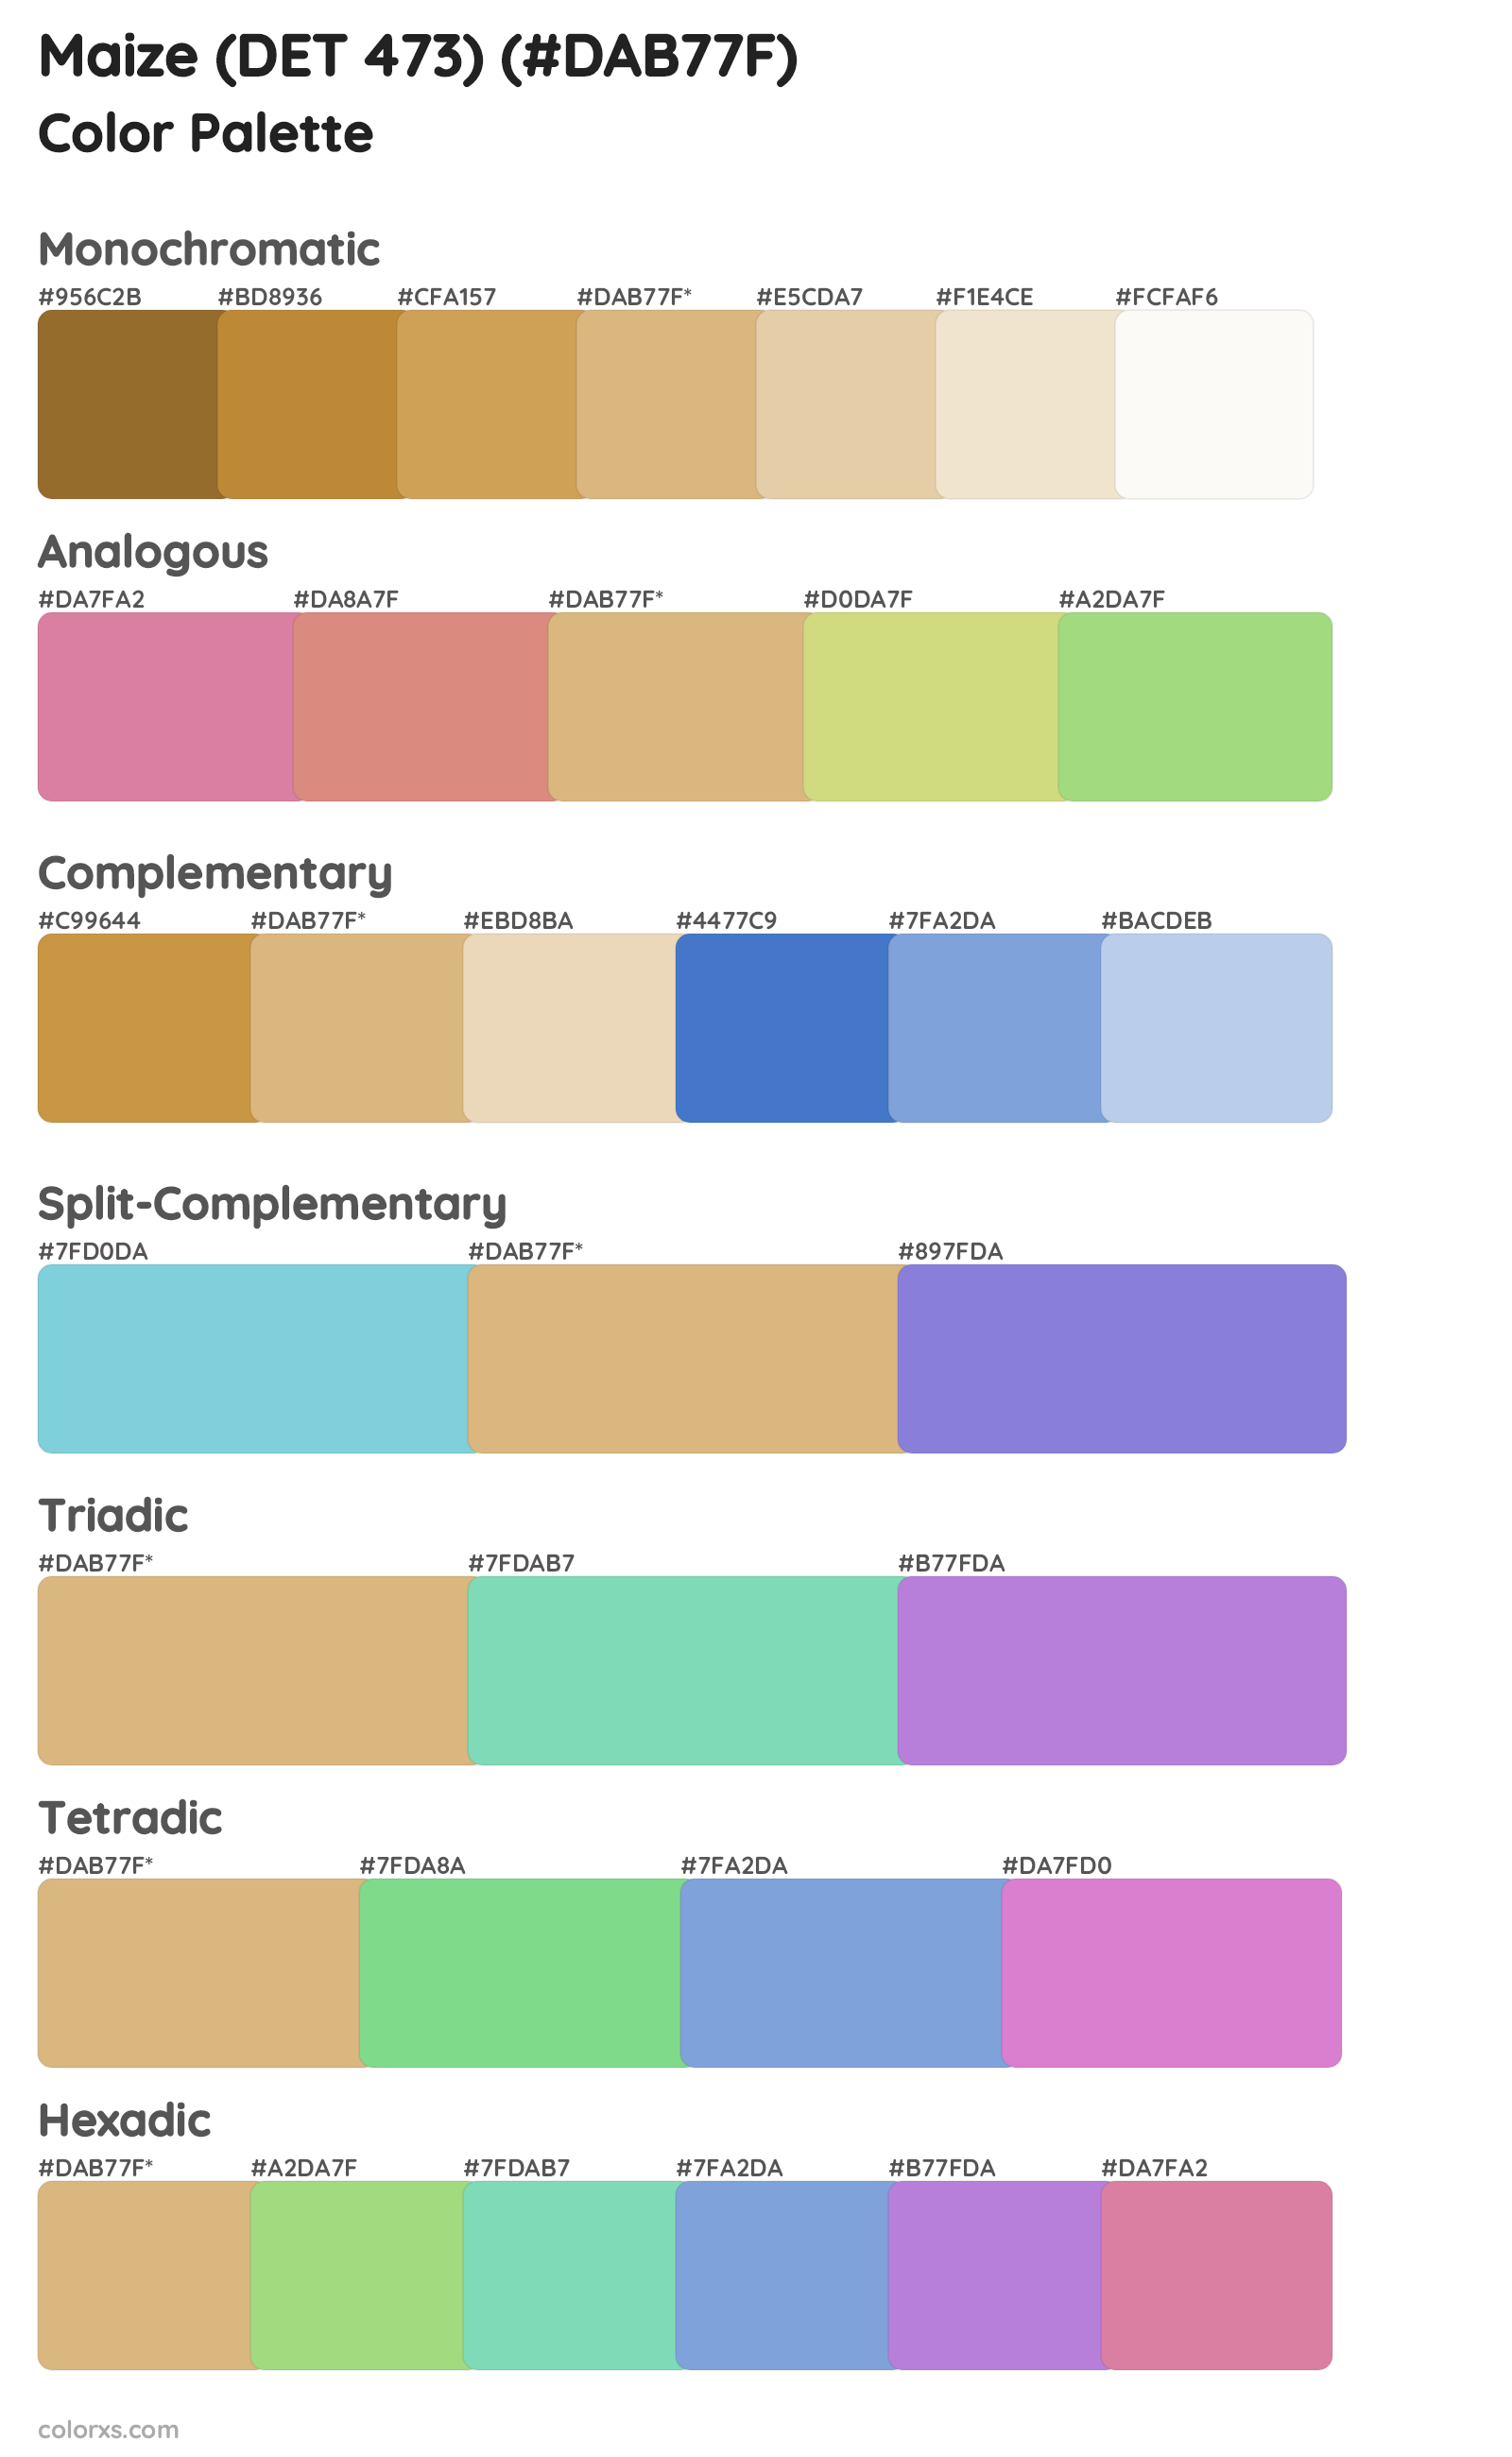 Maize (DET 473) Color Scheme Palettes